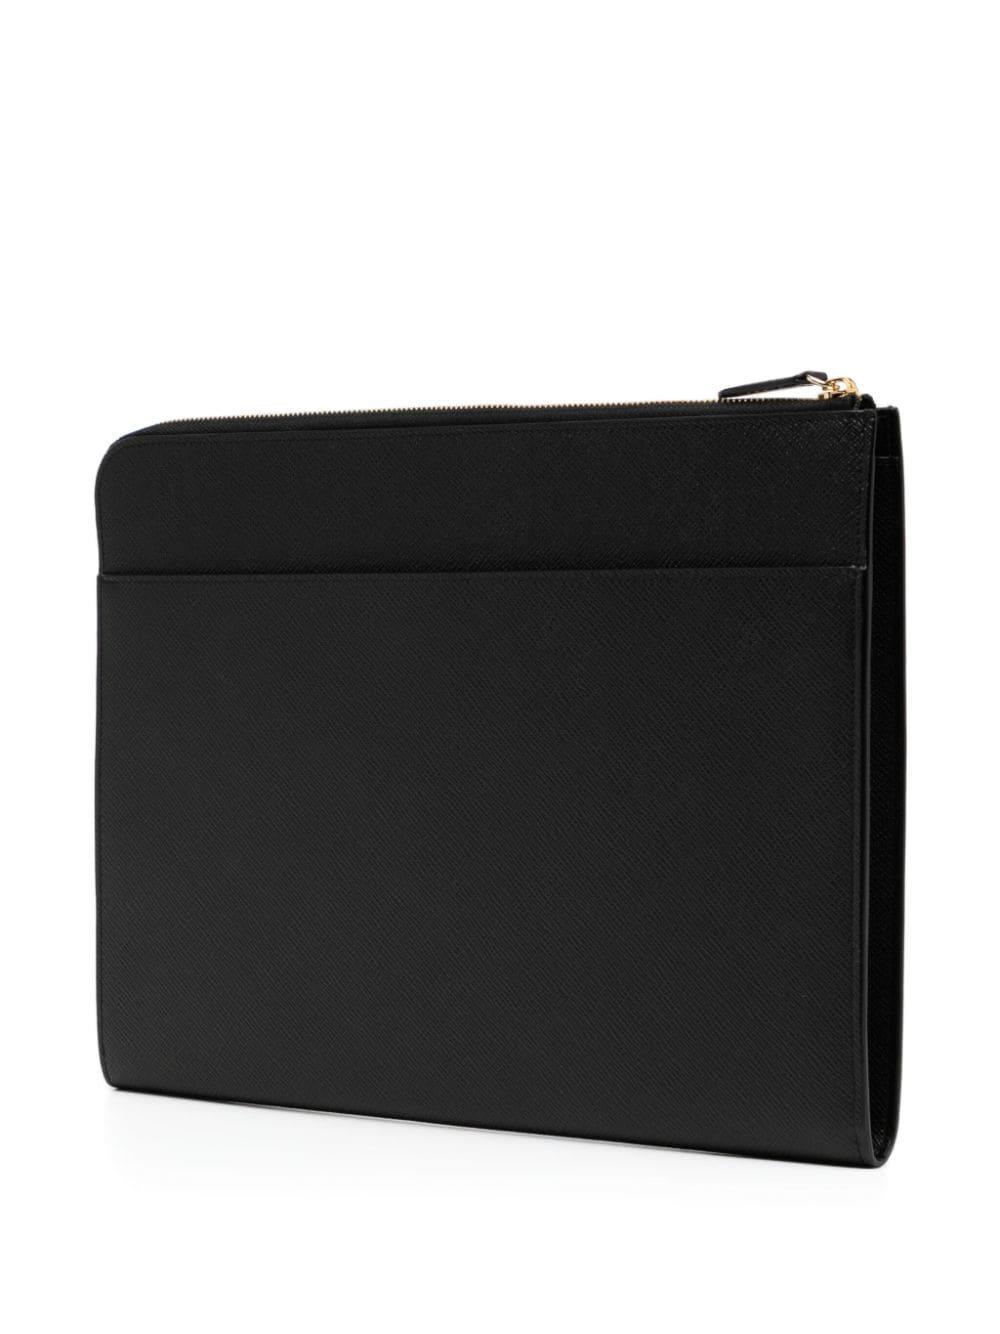 Smythson small laptop case - Black